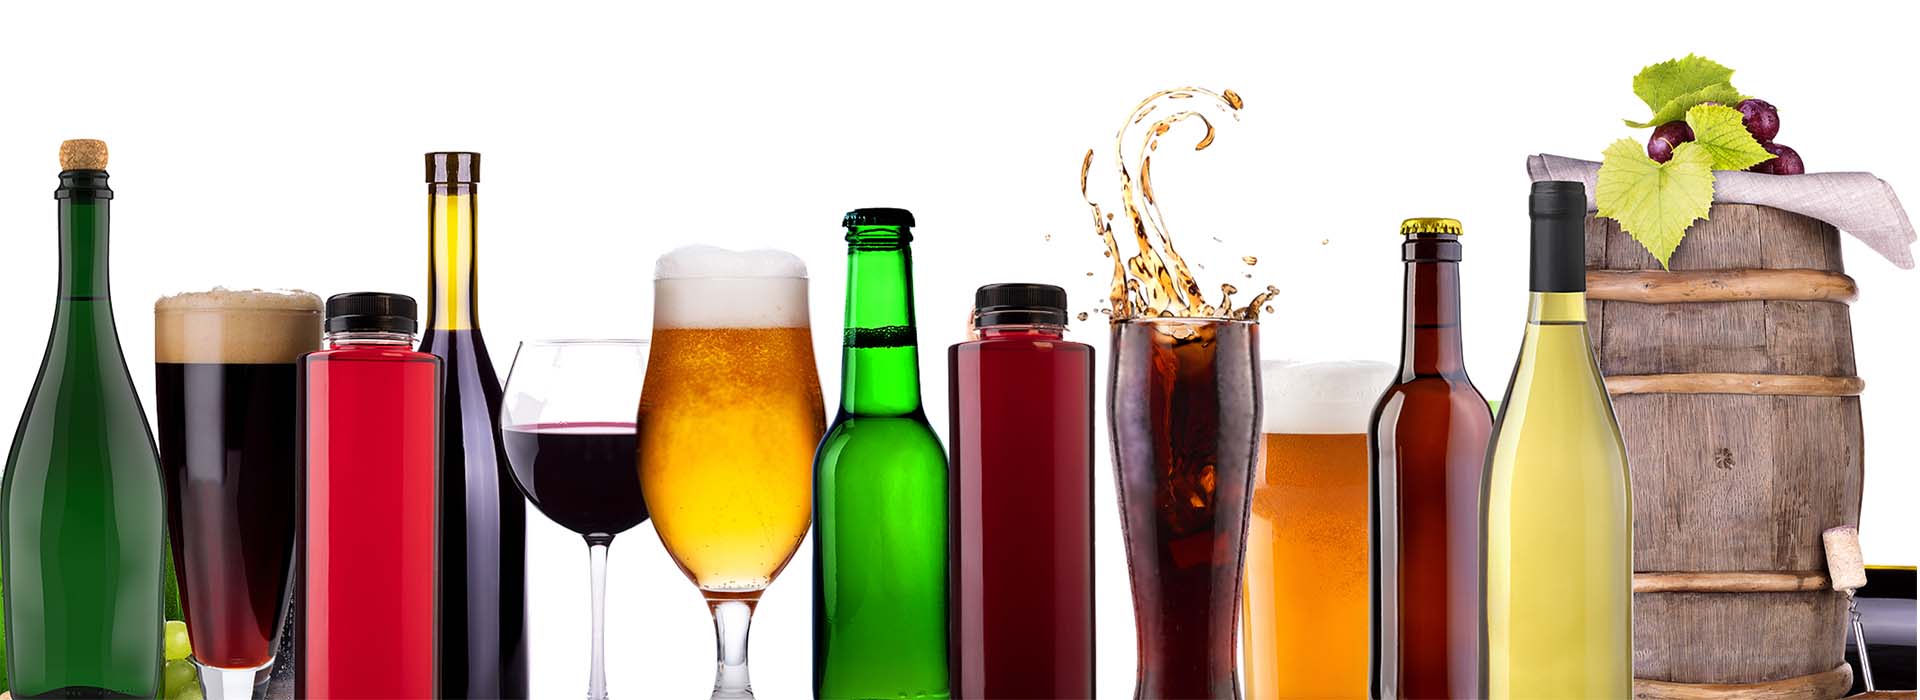 Produkter og sortiment inden for drikkevarer